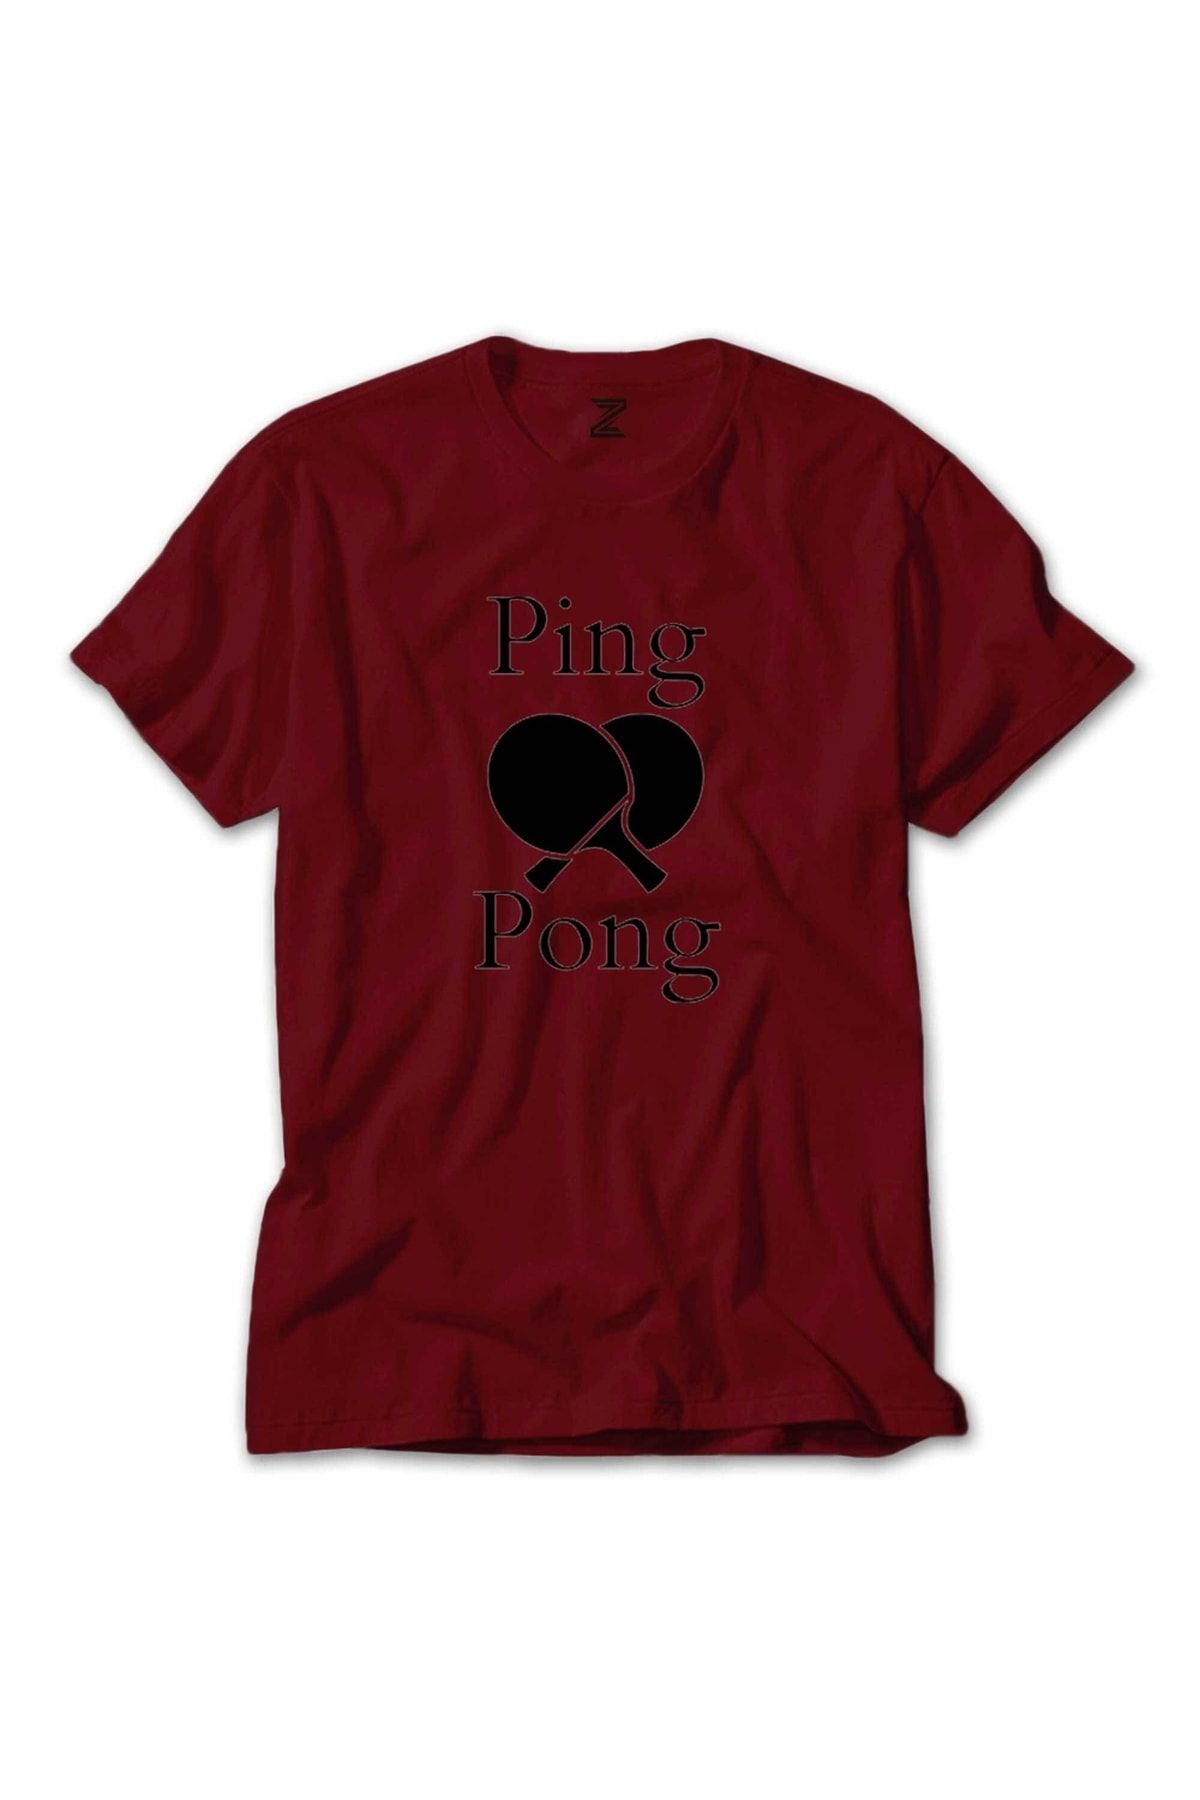 Z zepplin Ping Pong Racket Design Black Kırmızı Tişört